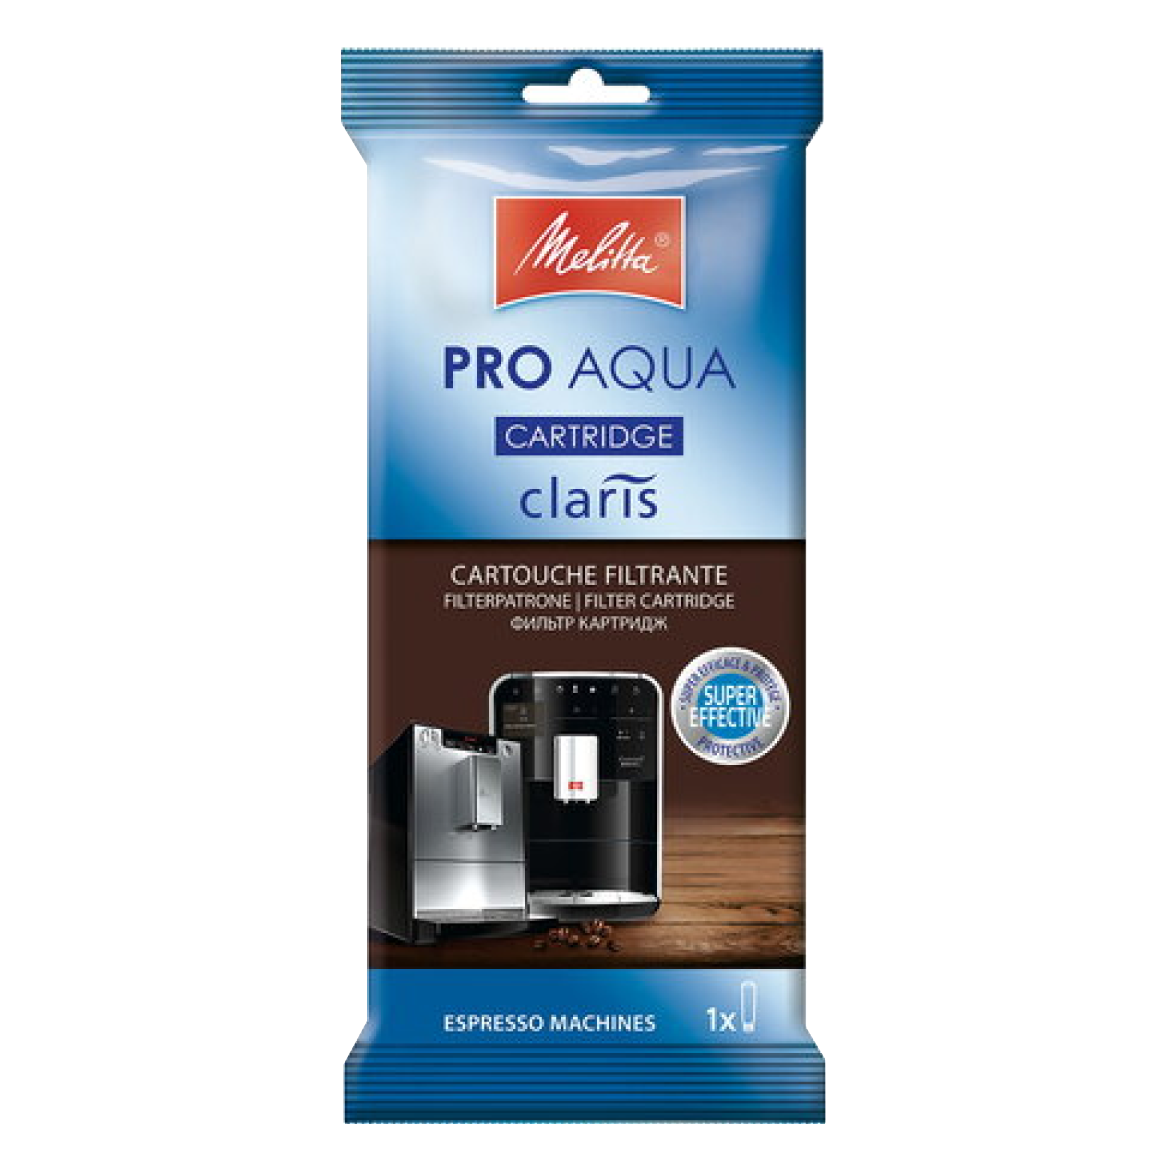 Pro Aqua Melitta – Torrefactory